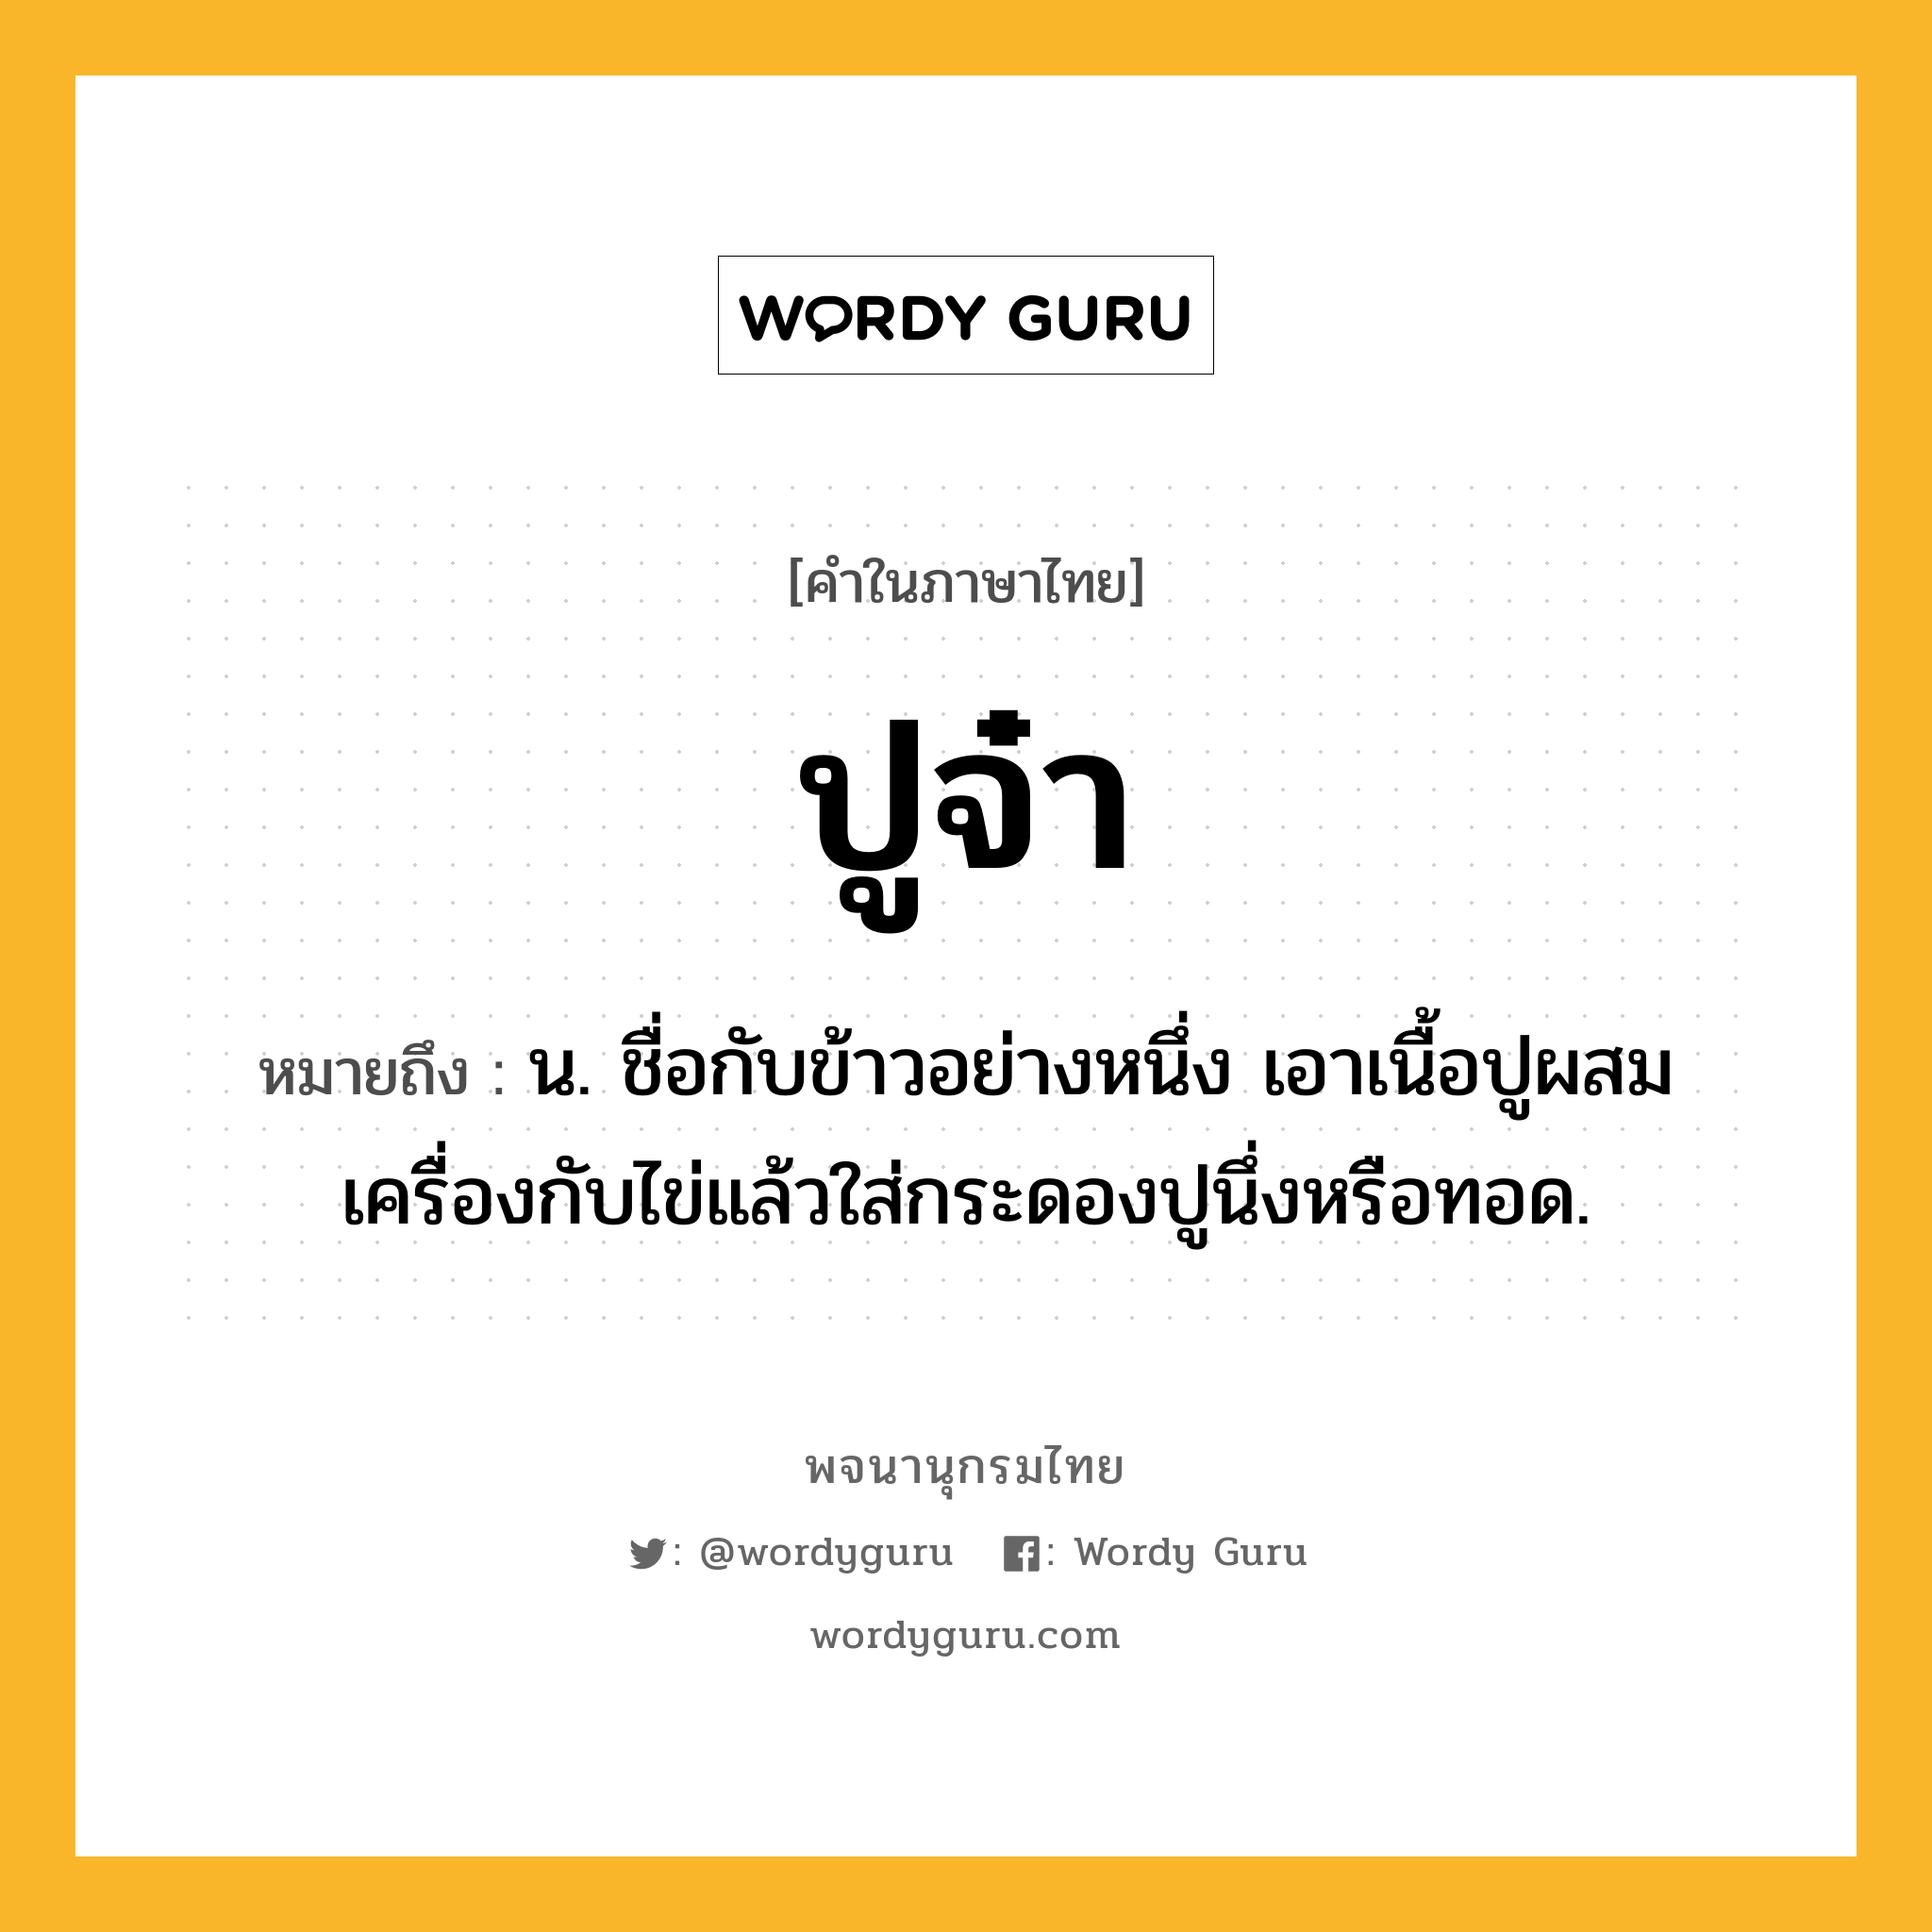 ปูจ๋า หมายถึงอะไร?, คำในภาษาไทย ปูจ๋า หมายถึง น. ชื่อกับข้าวอย่างหนึ่ง เอาเนื้อปูผสมเครื่องกับไข่แล้วใส่กระดองปูนึ่งหรือทอด.